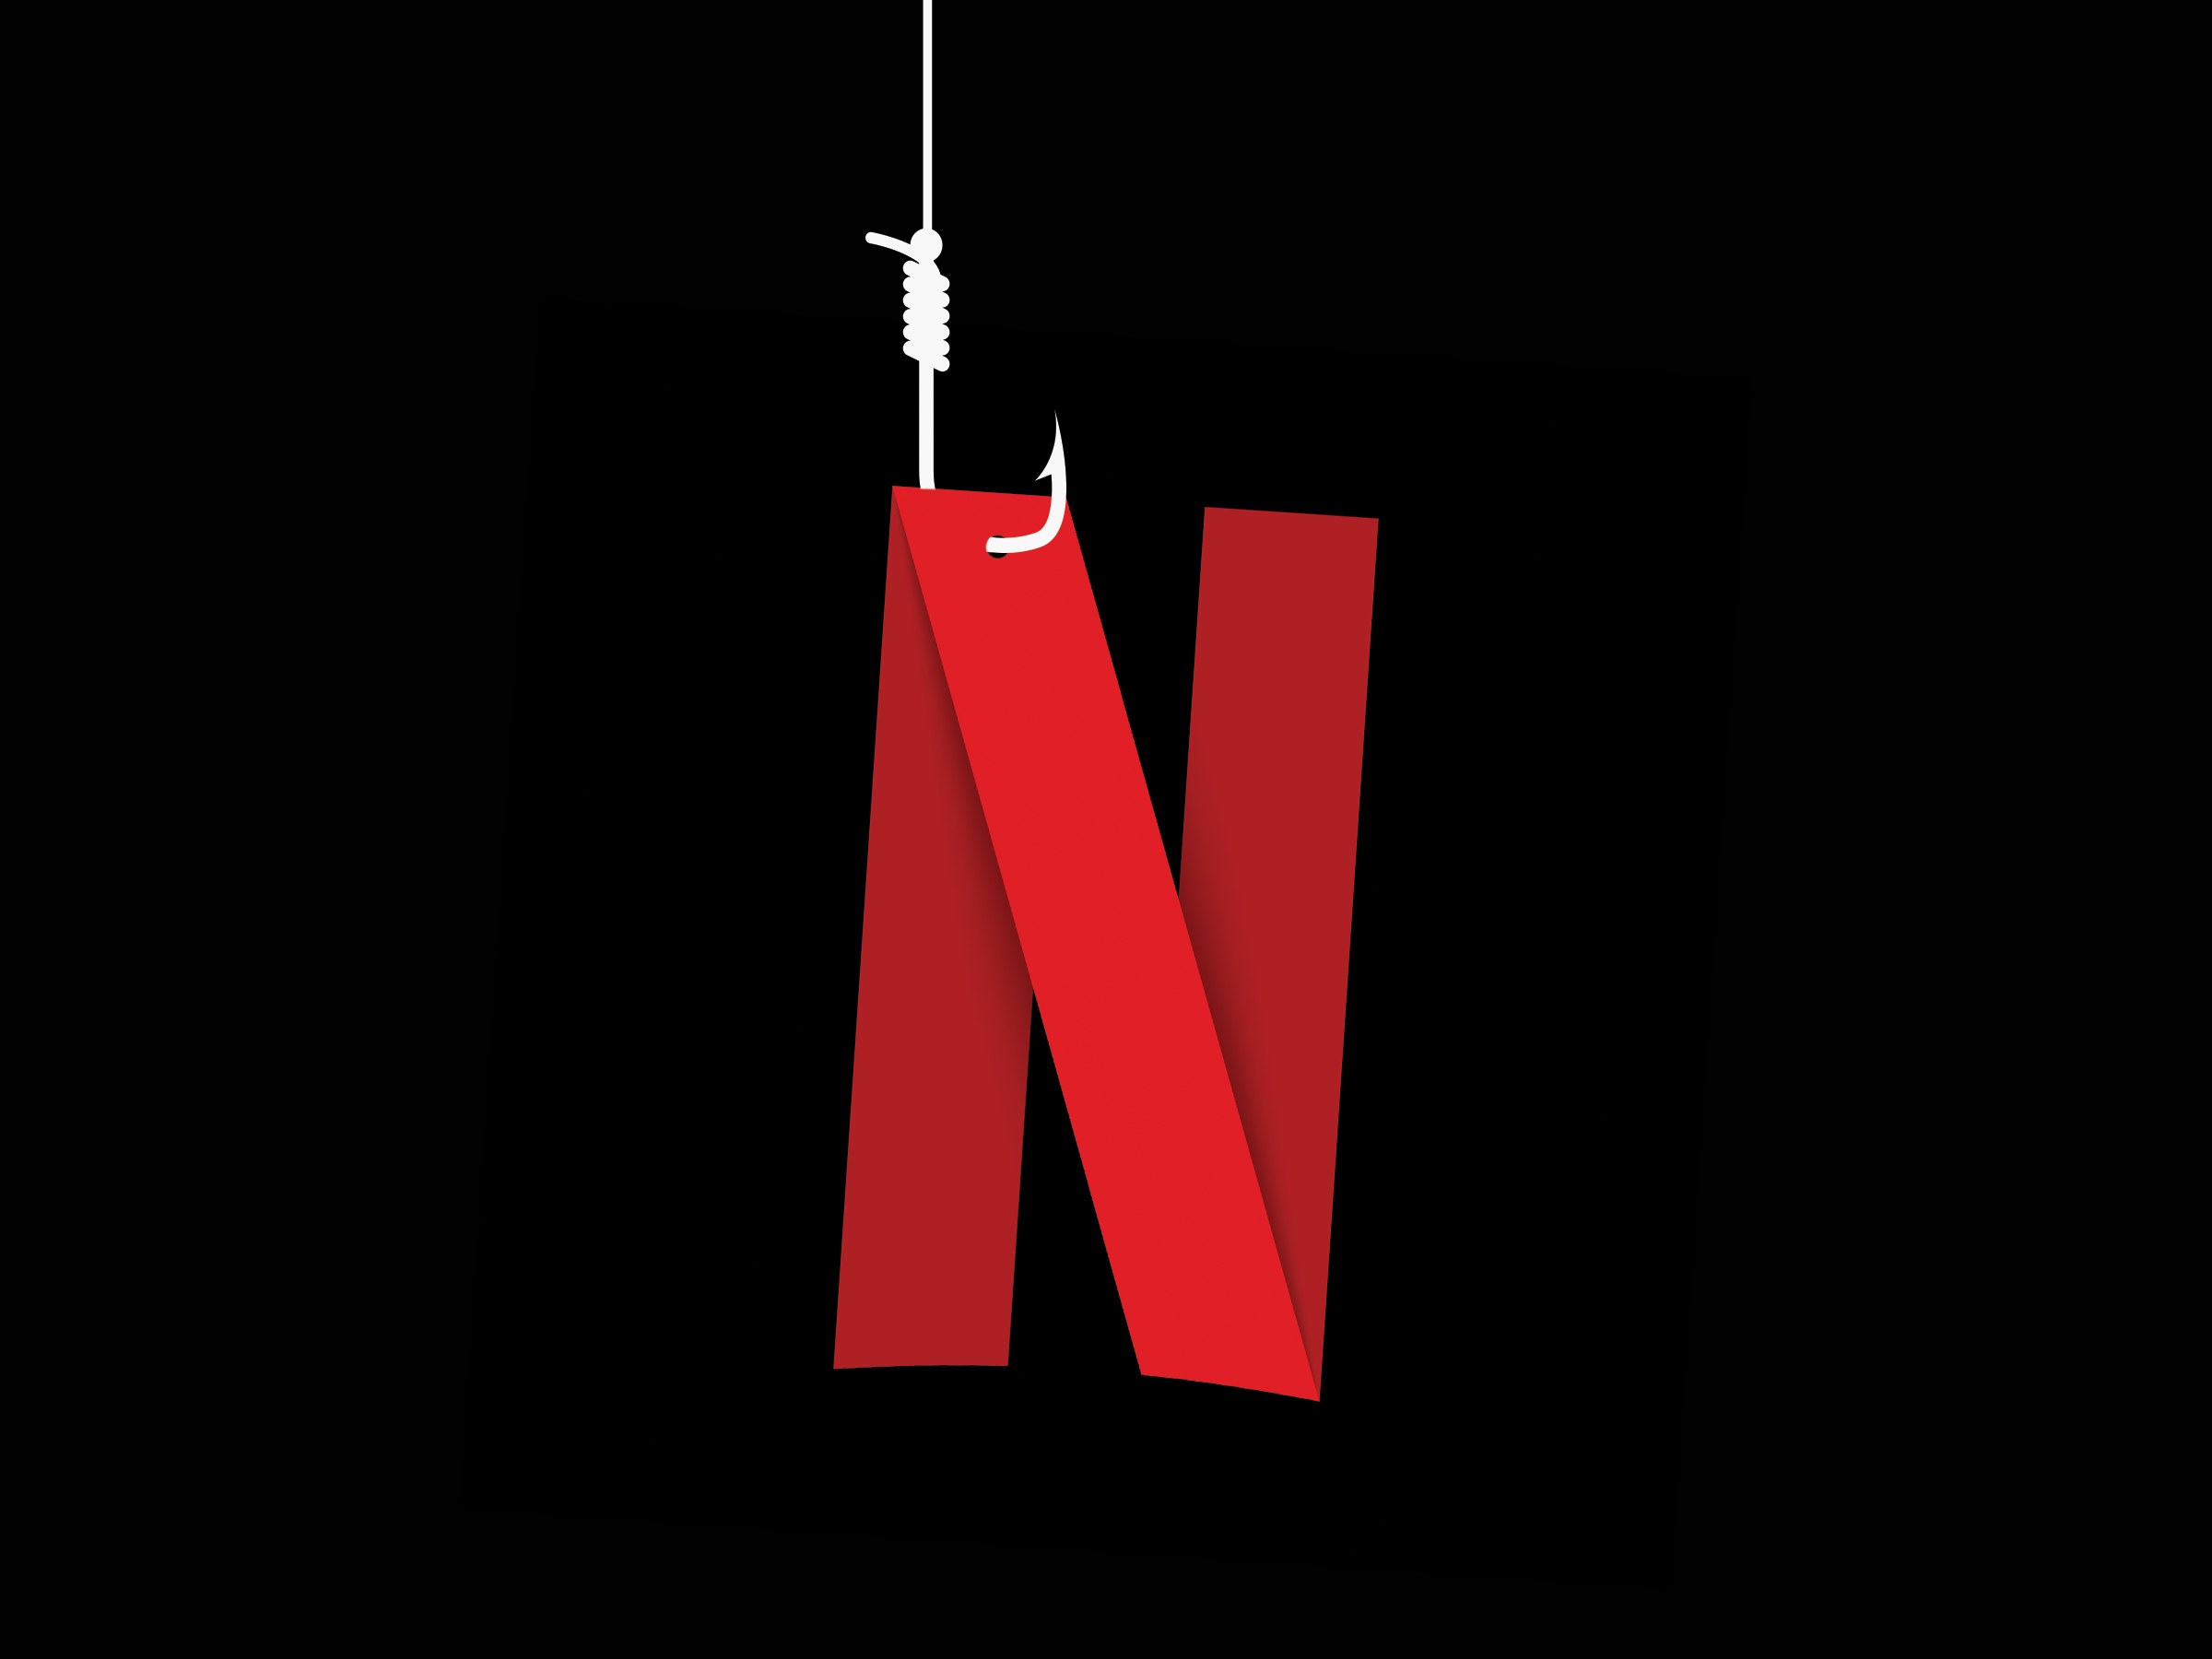 Cuidado: email falso da Netflix diz que sua conta foi suspensa